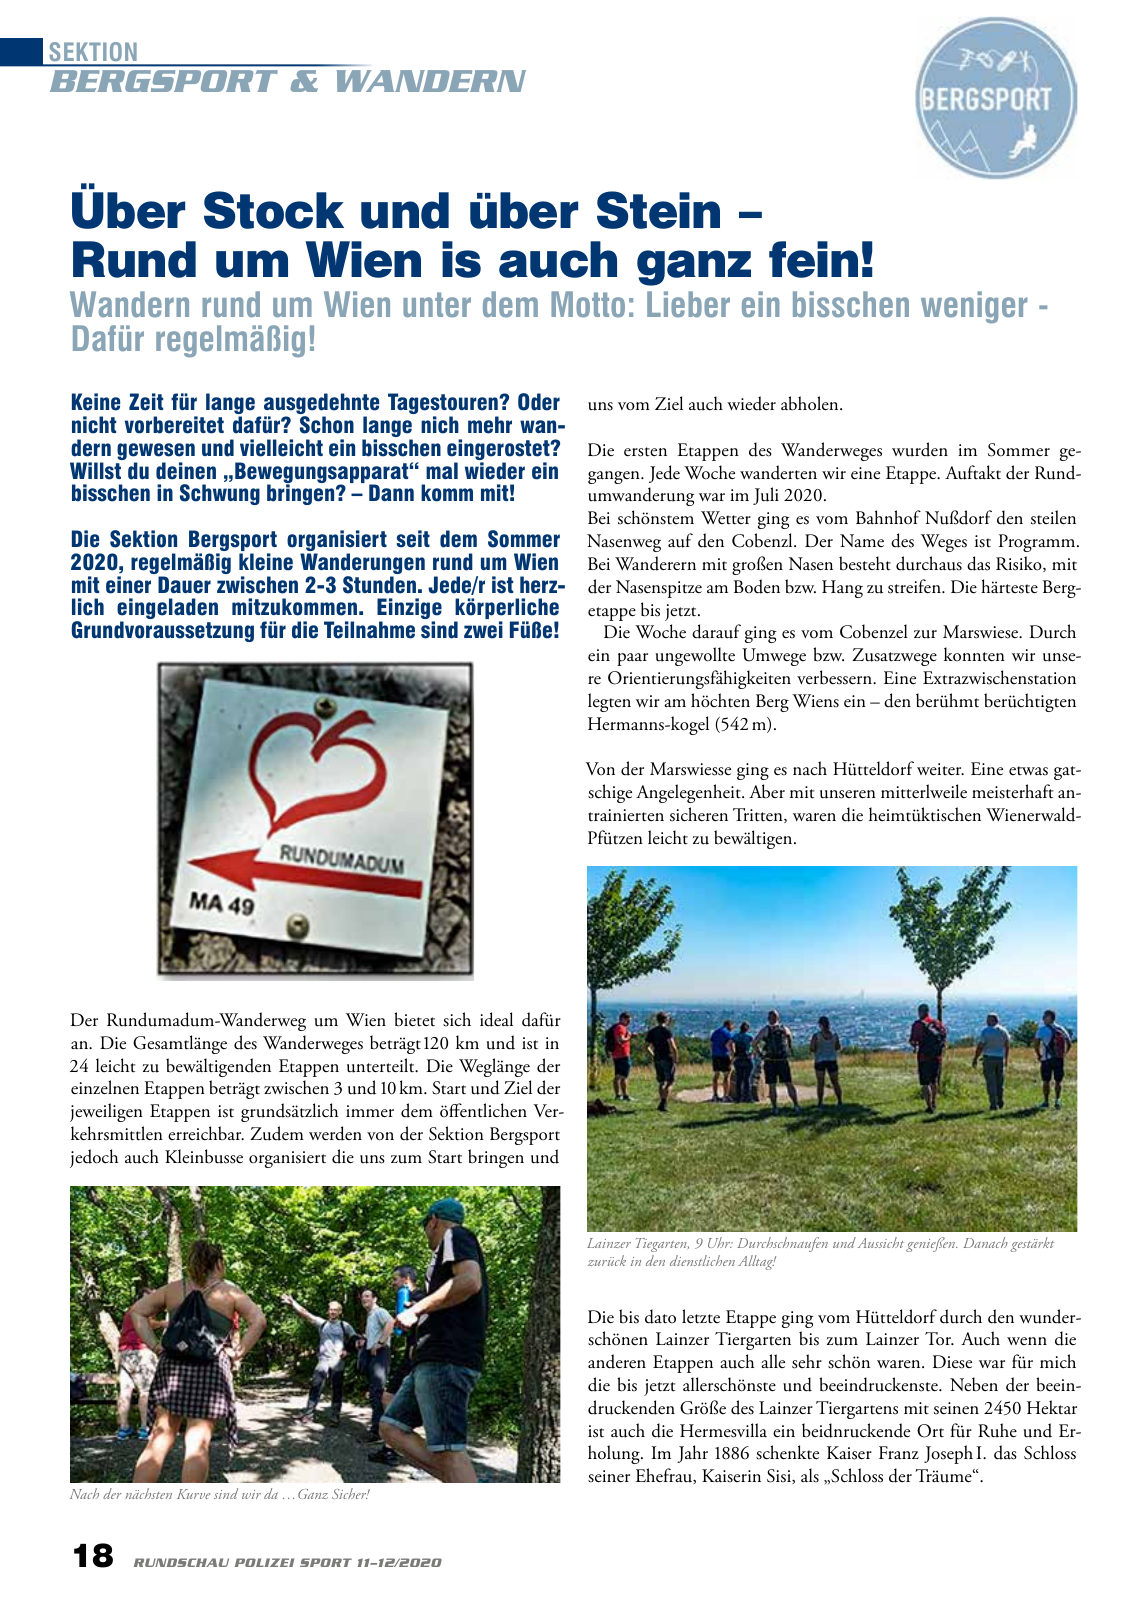 Vorschau Rundschau Polizei Sport 11-12/2020 Seite 18